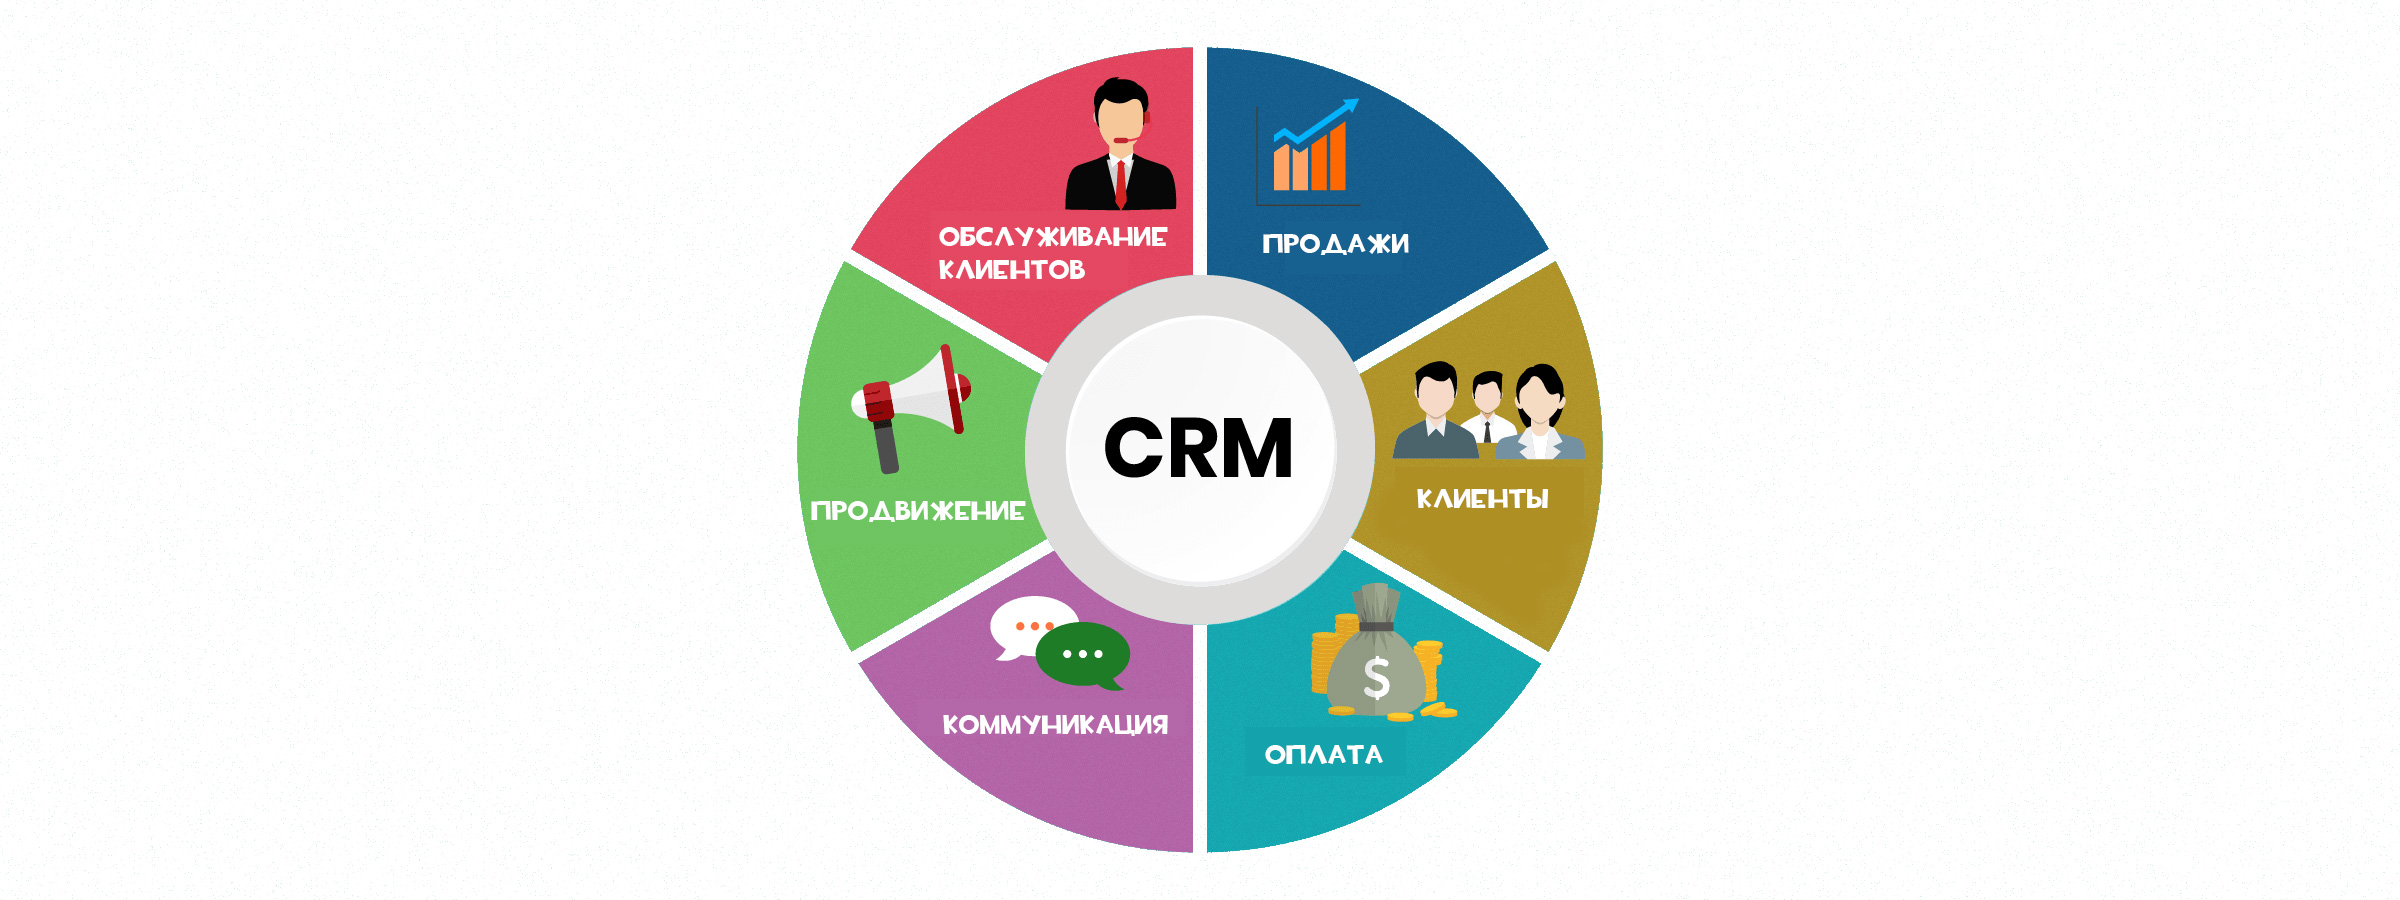 Продажа информации о клиентах. Система управления взаимоотношениями с клиентами CRM система. CRM системы управления взаимоотношениями с клиентами. GRM - система управления ЗВАИМООТНОШЕНИЯ С клиентами. Управление взаимоотношениями с клиентами CRM.